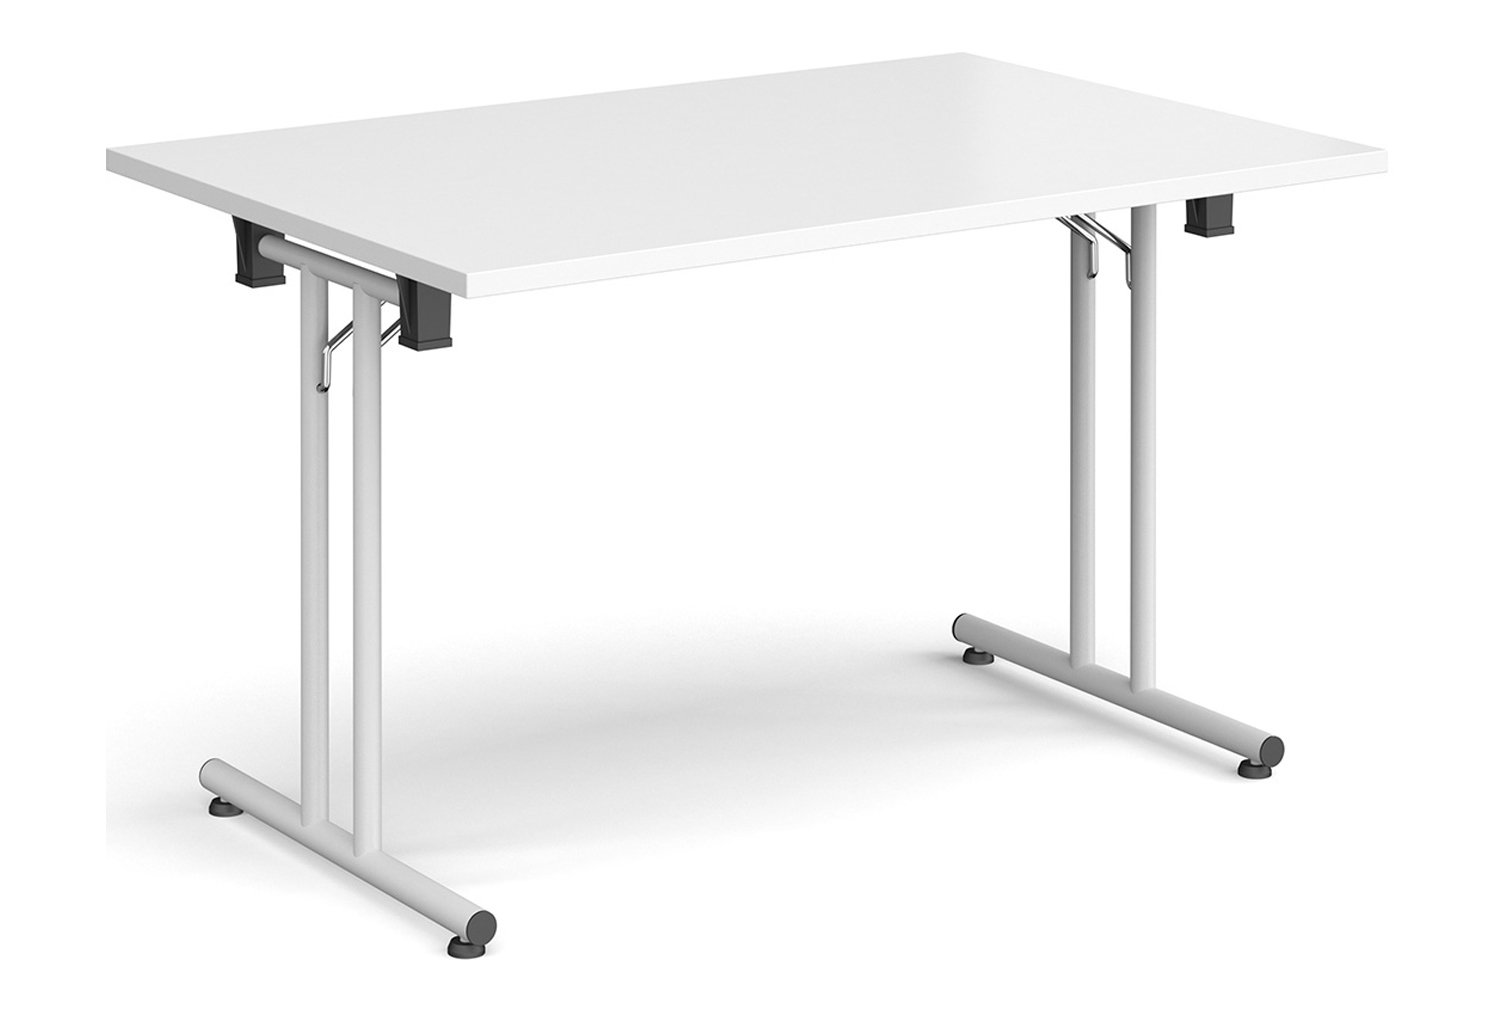 Durand Rectangular Folding Table, 120wx80dx73h (cm), White Frame, White